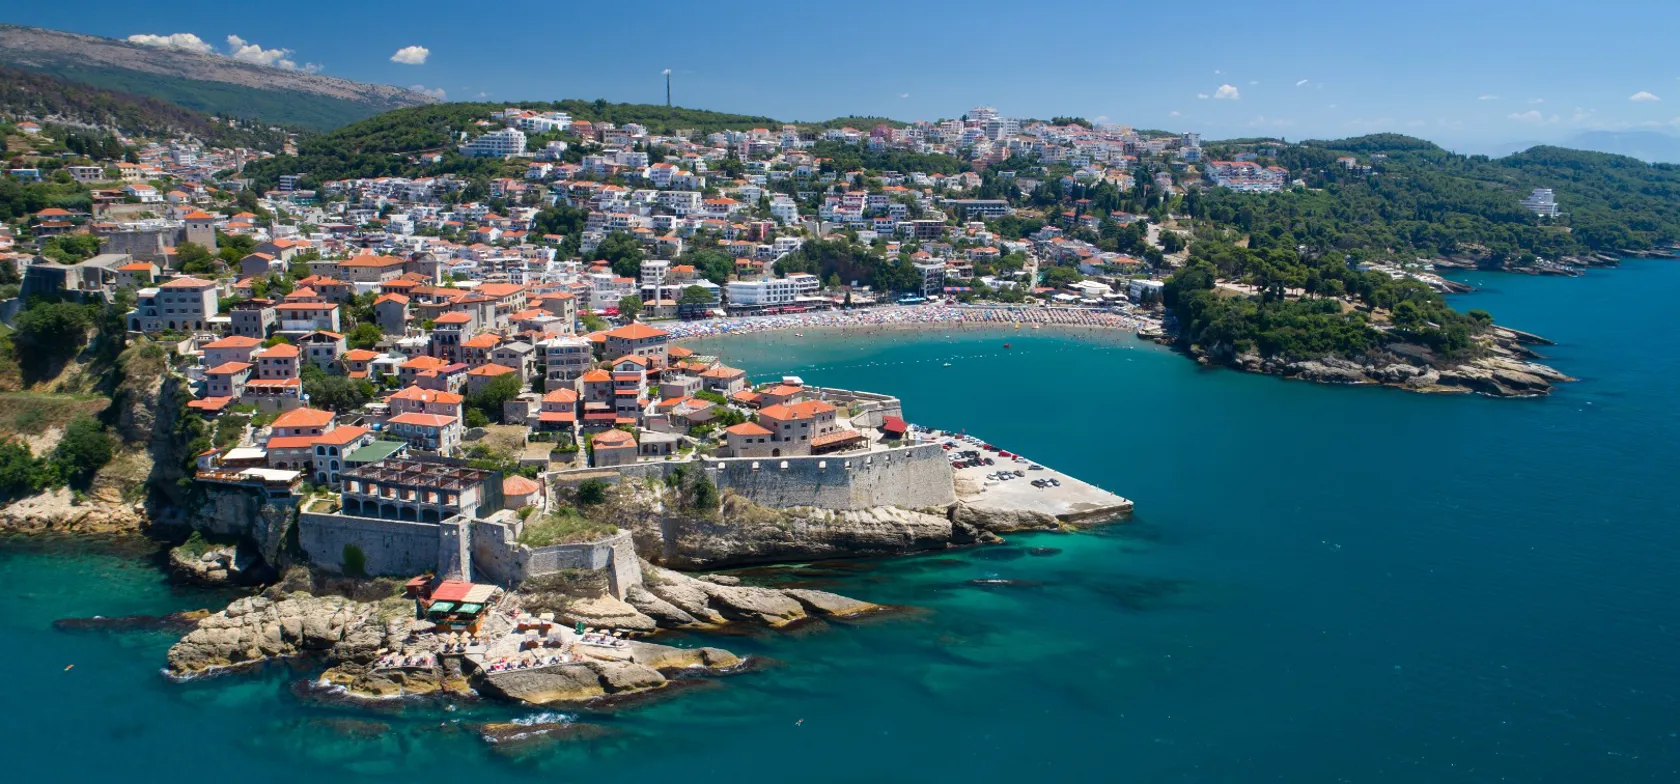 Ulcinj er en af de ældste byer på Adriaterhavskysten.